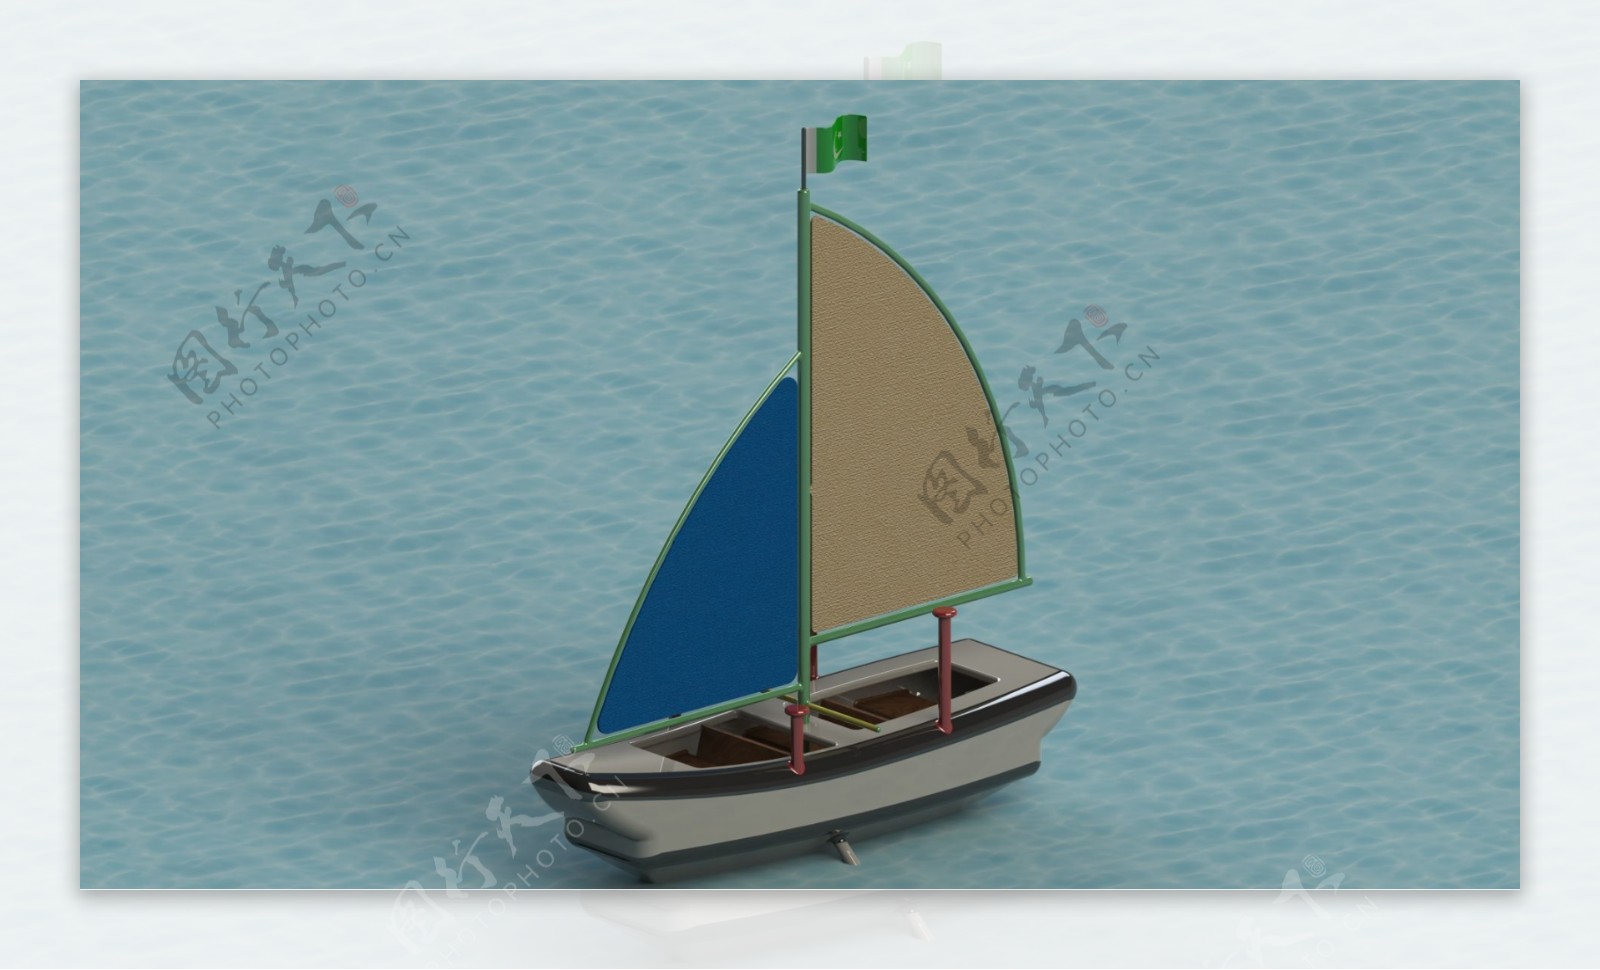 为Makerbot复制2桌面3D打印机的挑战半喜欢奢华的游艇